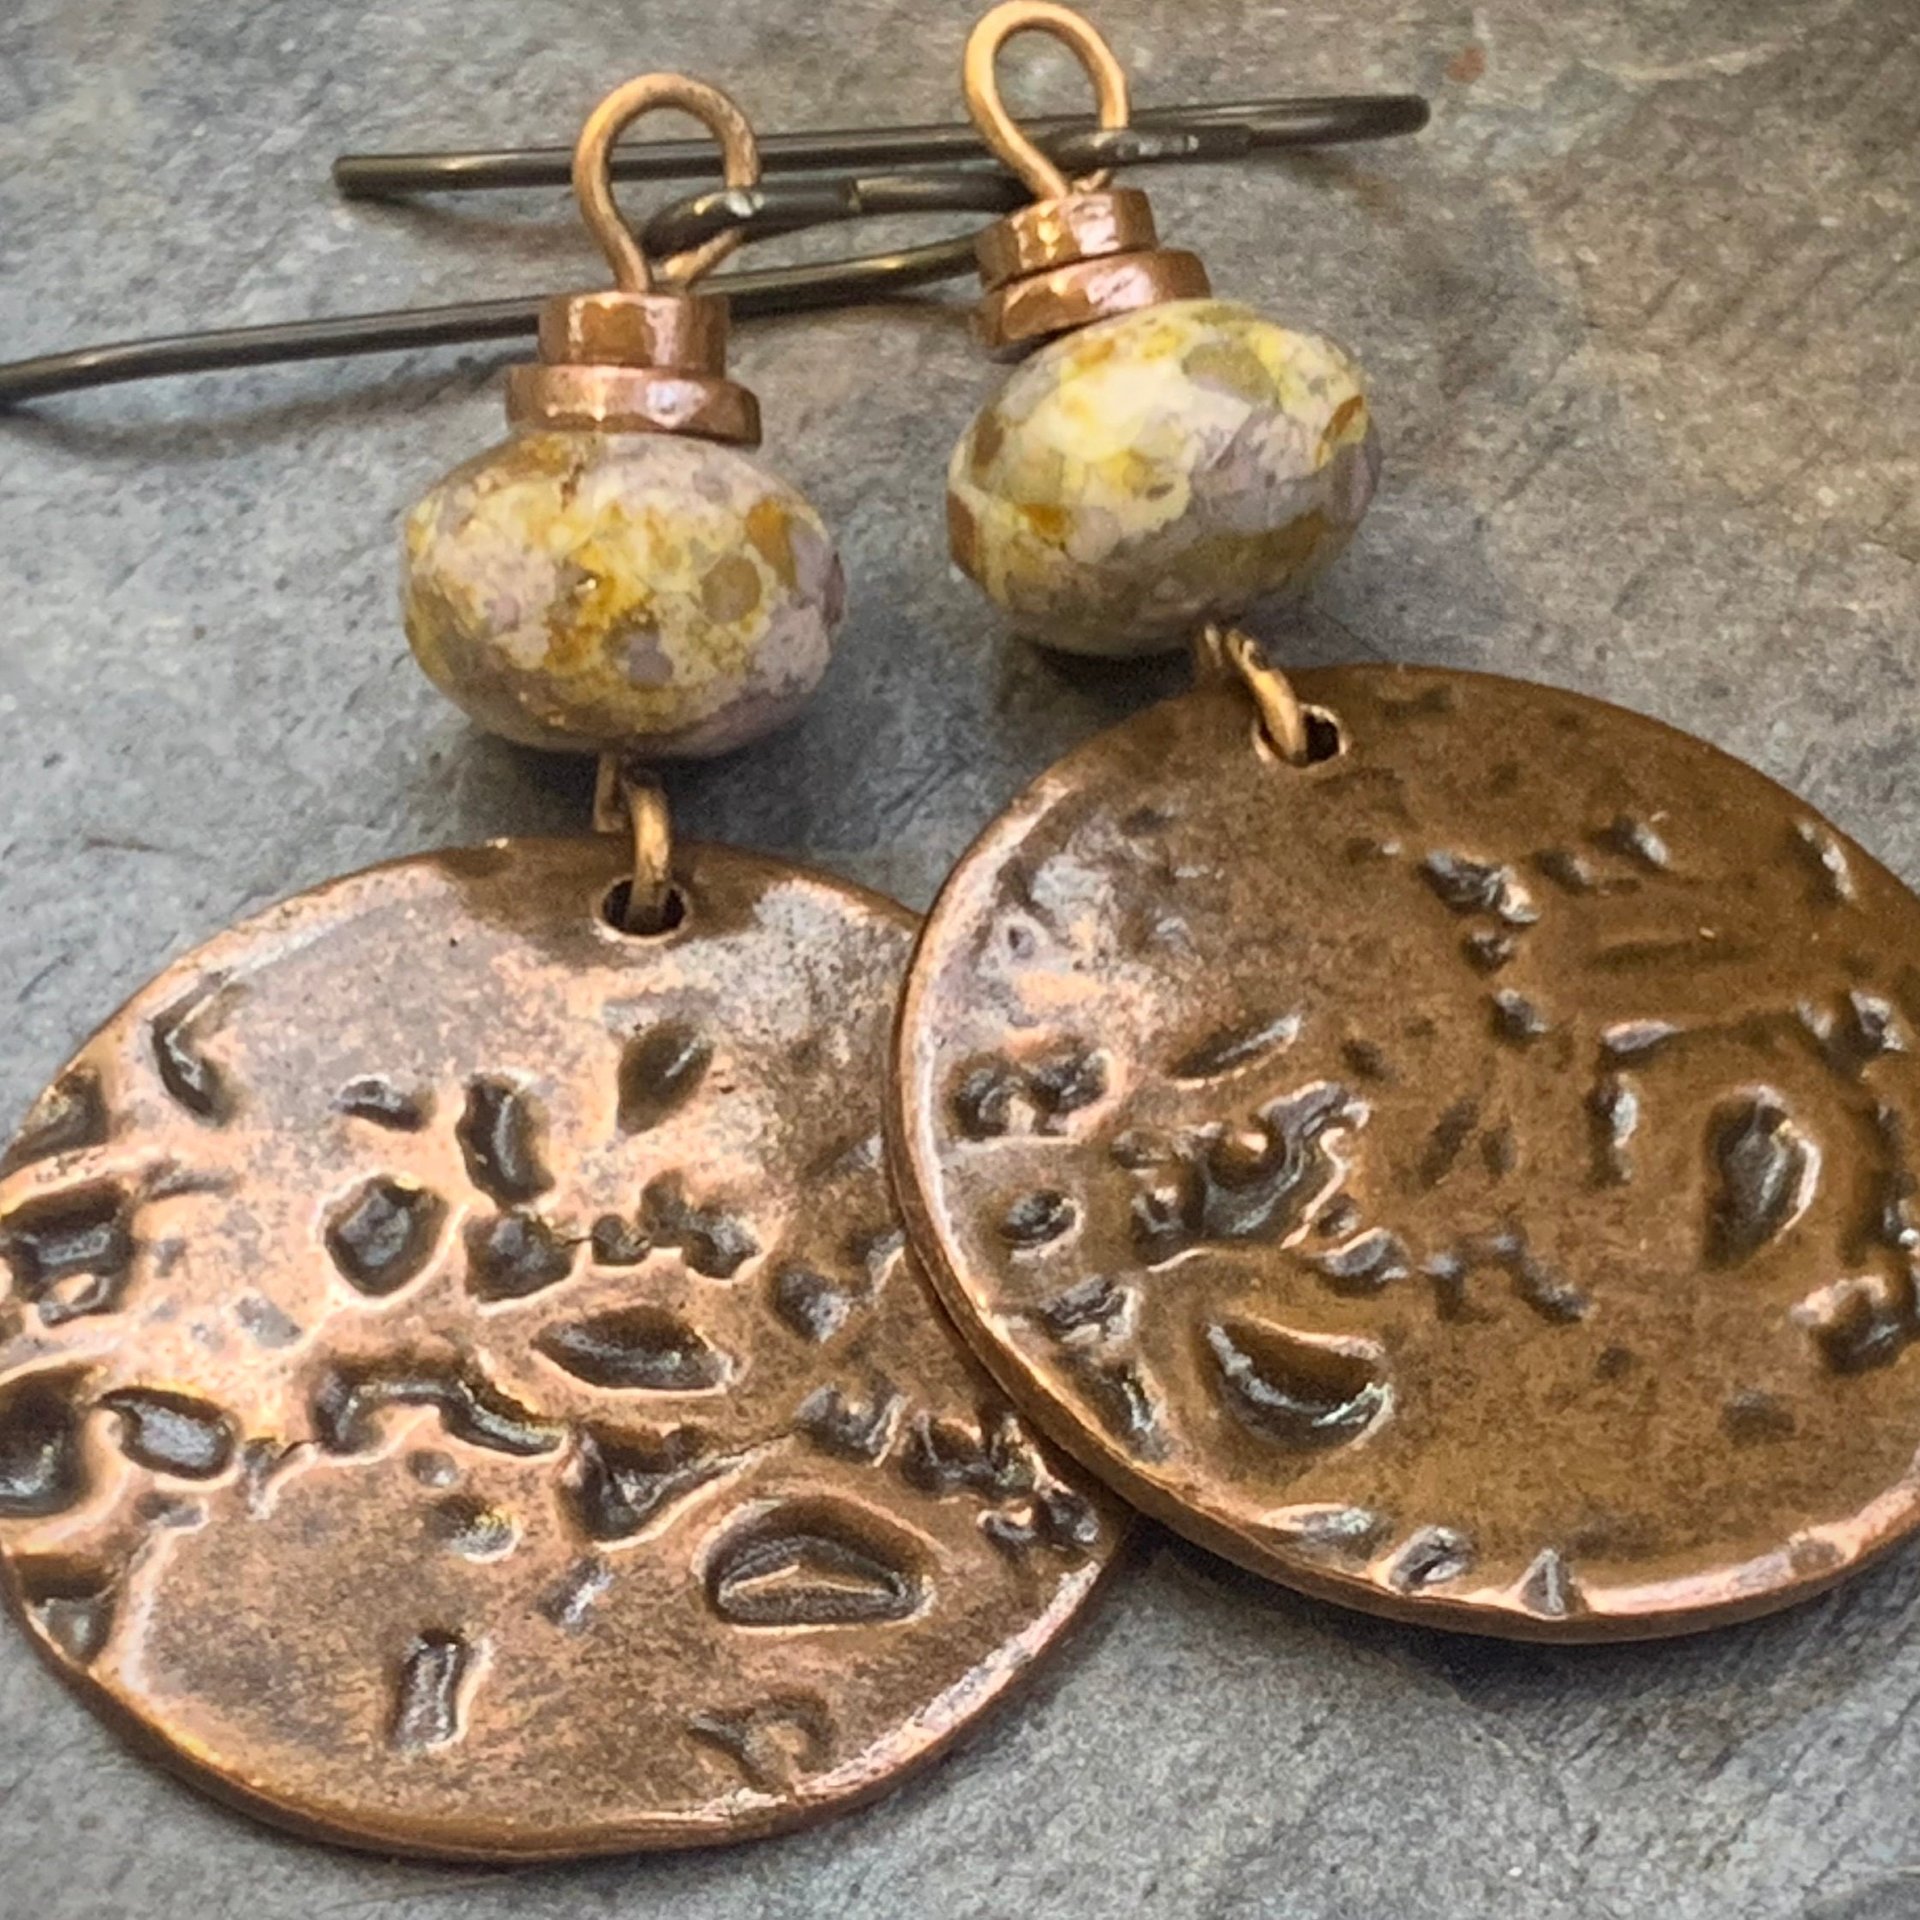 Copper Disc Earrings, Czech Glass Beads, Hypoallergenic Ear Wires, Earthy Tribal, Boho Chic Style, Dangle Discs, Handmade Metal Jewelry